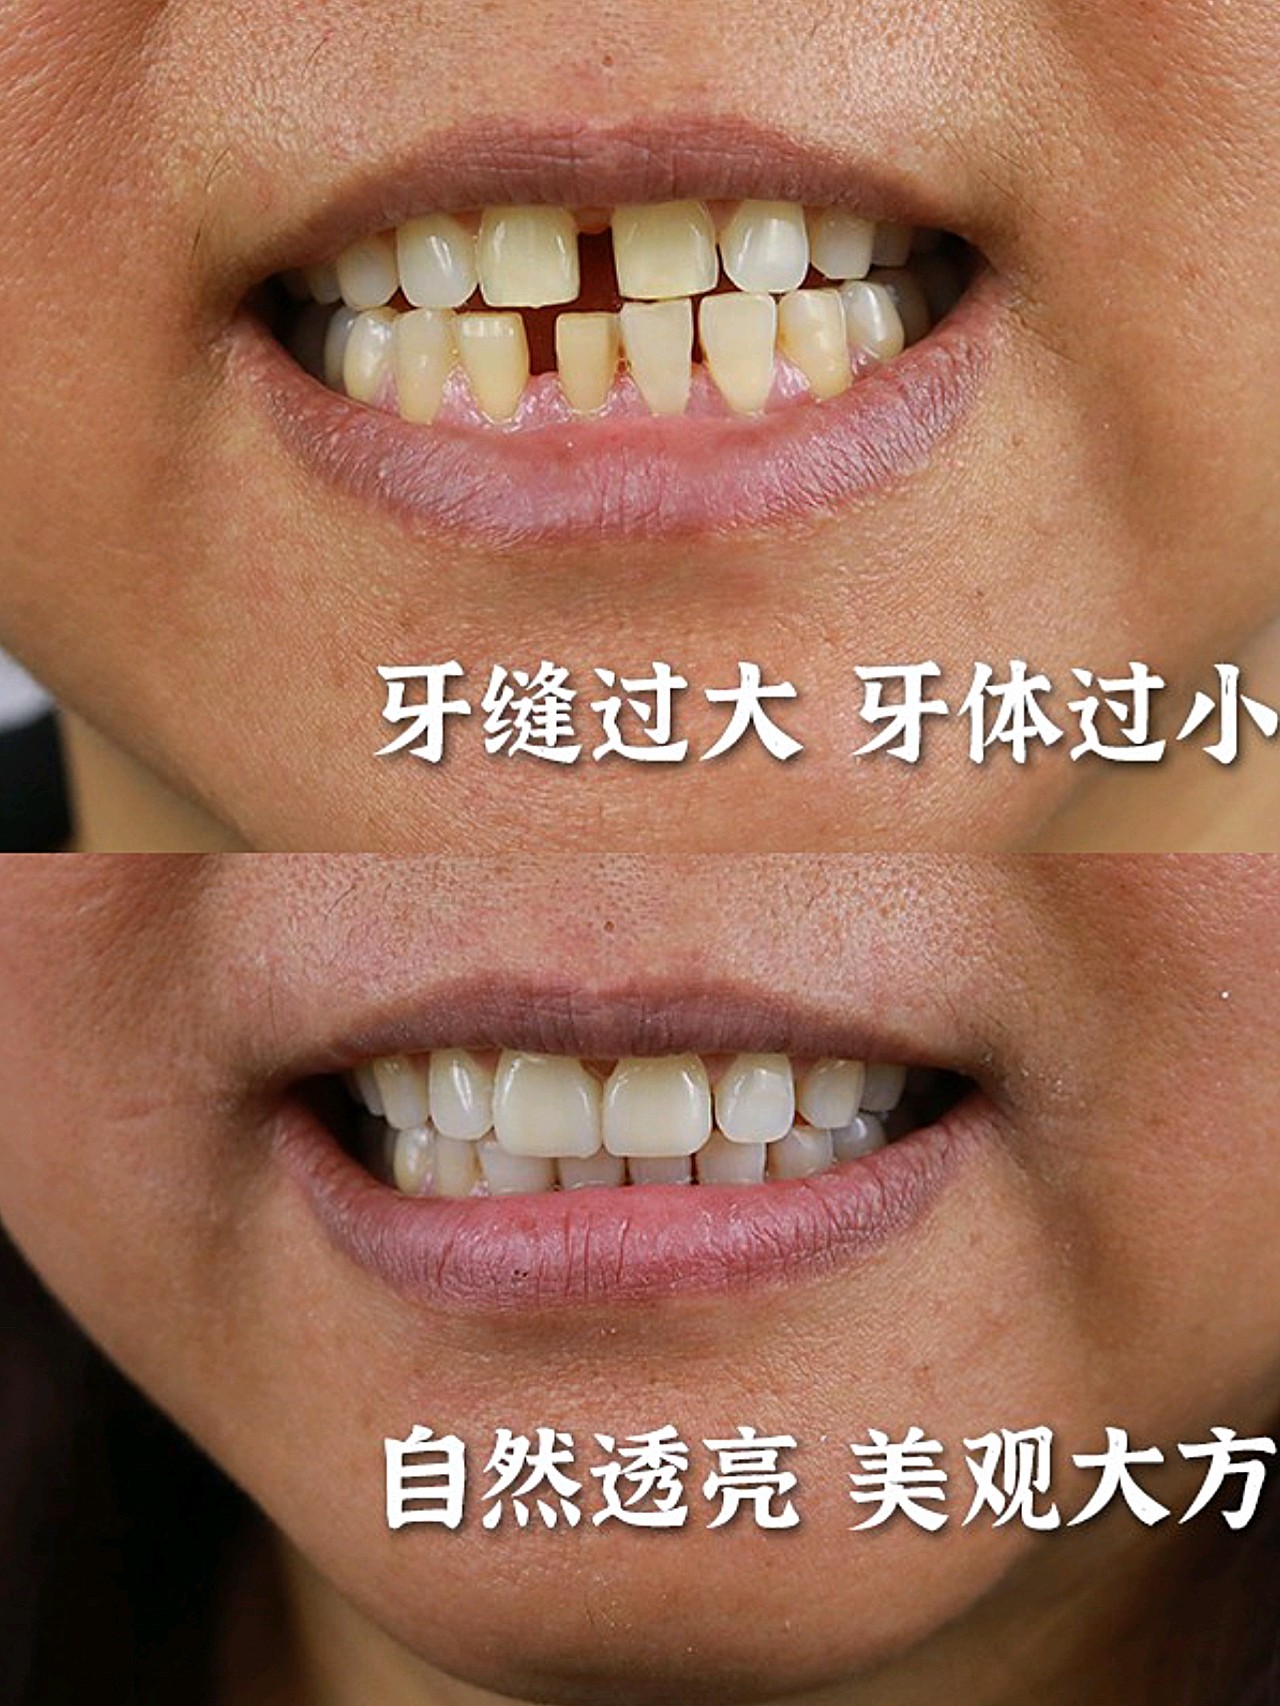 今日分享案例是,一位上牙齿缝隙过大,牙齿偏大的女士